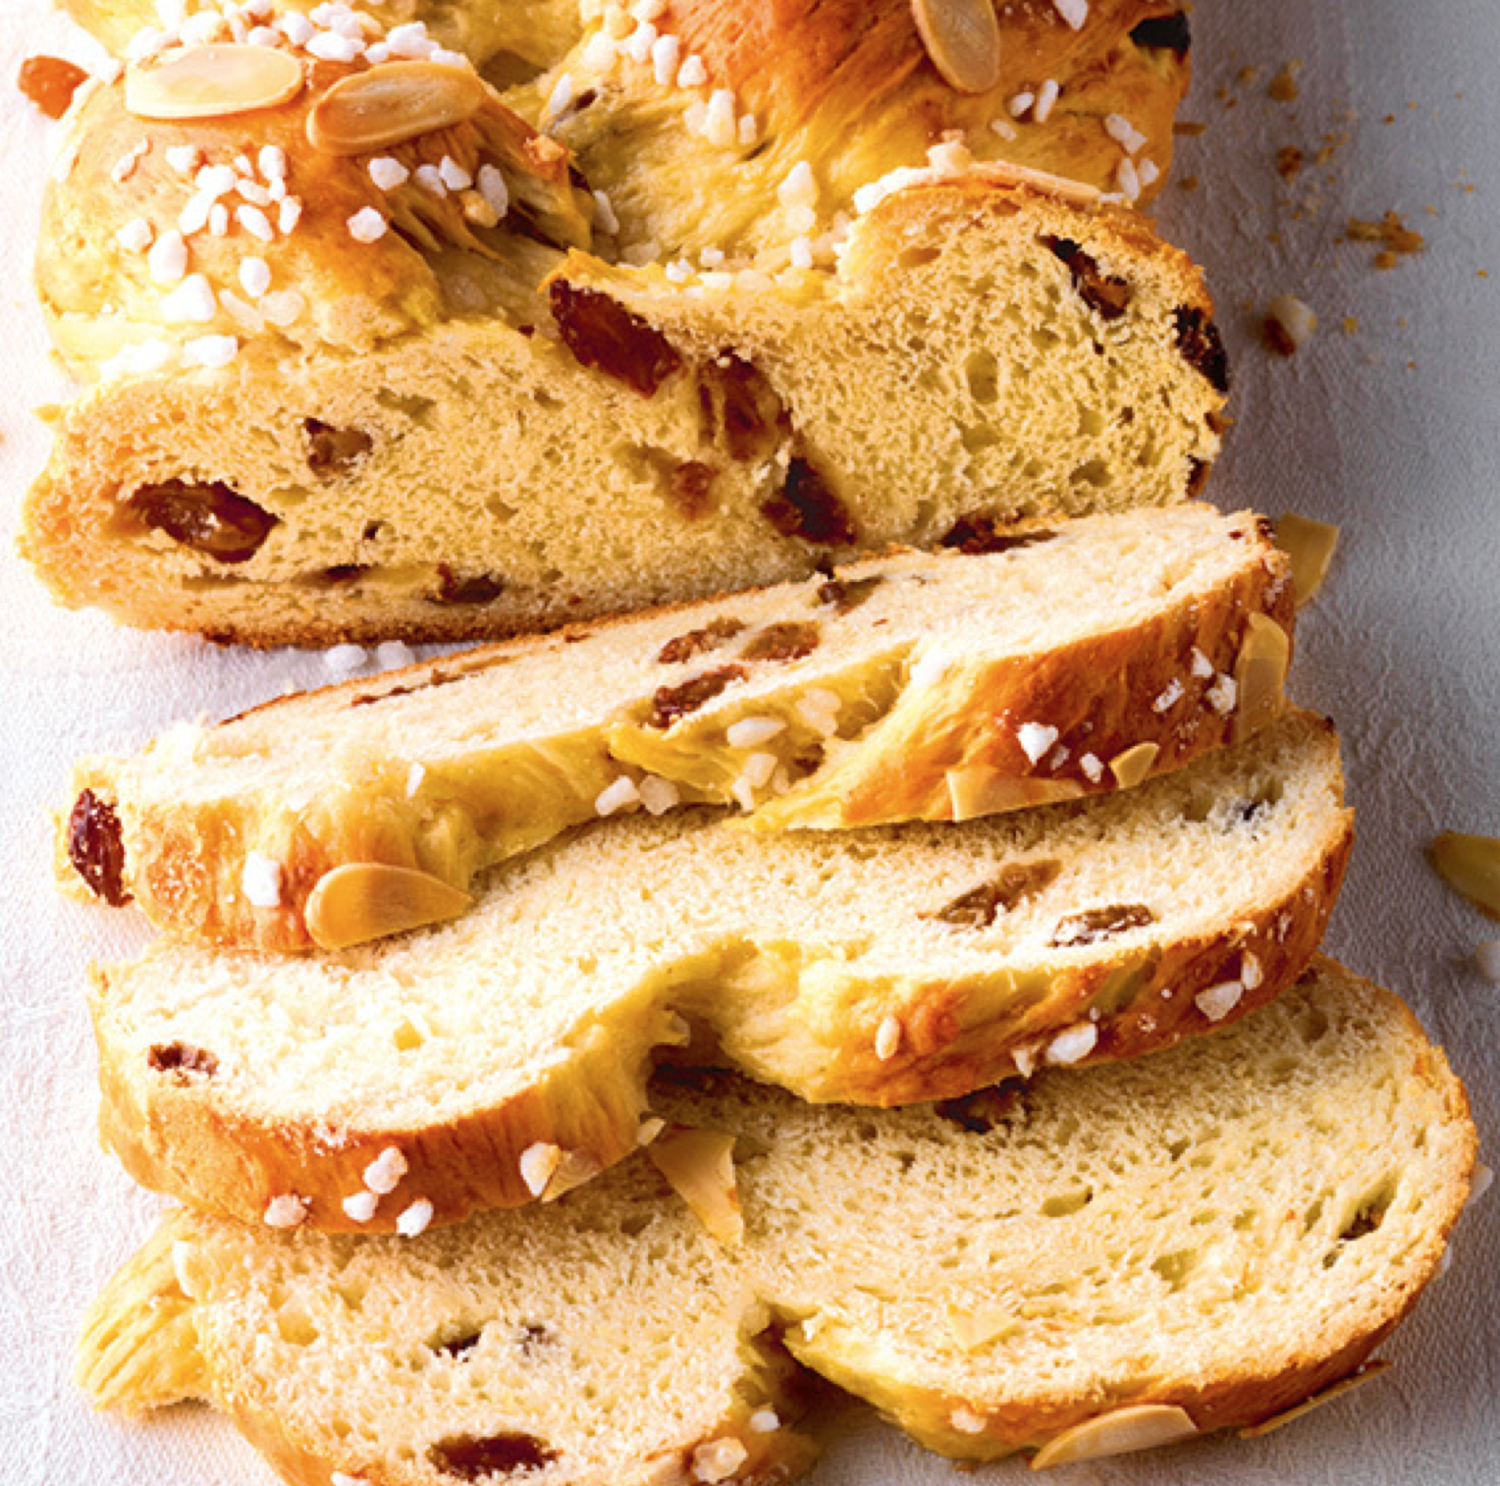 Braided yeast loaf with Raisins (Hefezopf auf Schwäbische art)